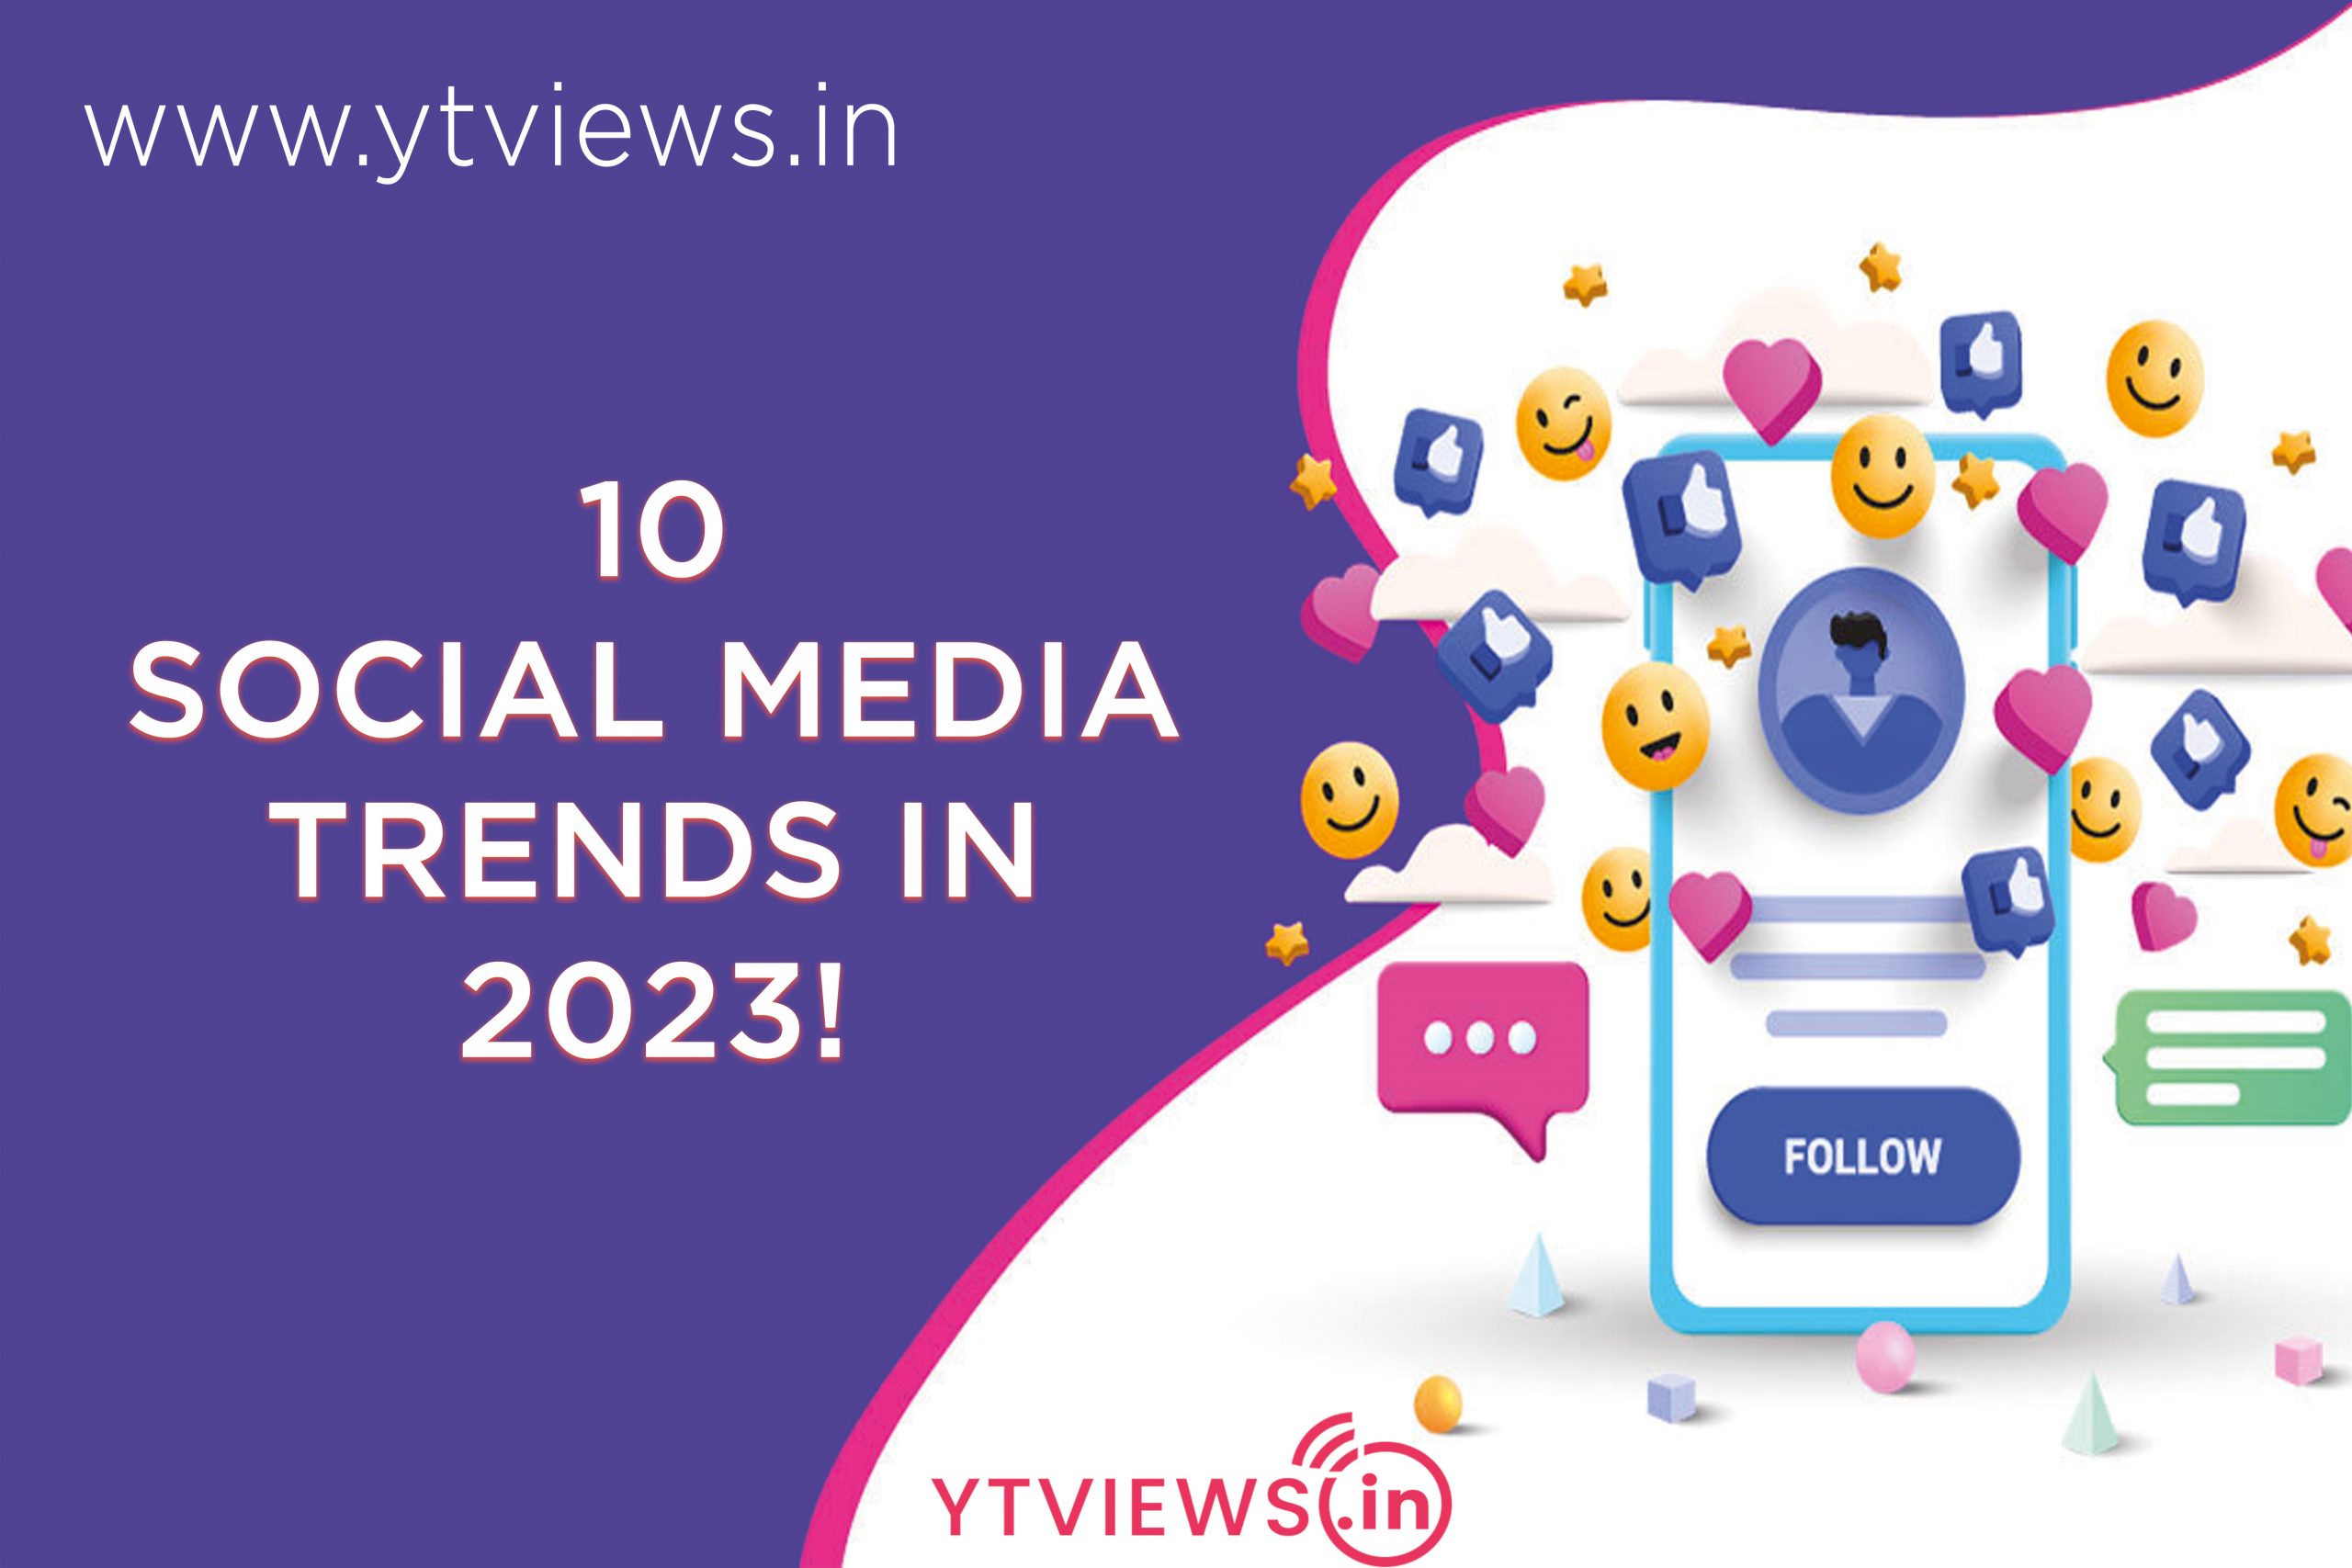 10 Social Media Trends in 2023